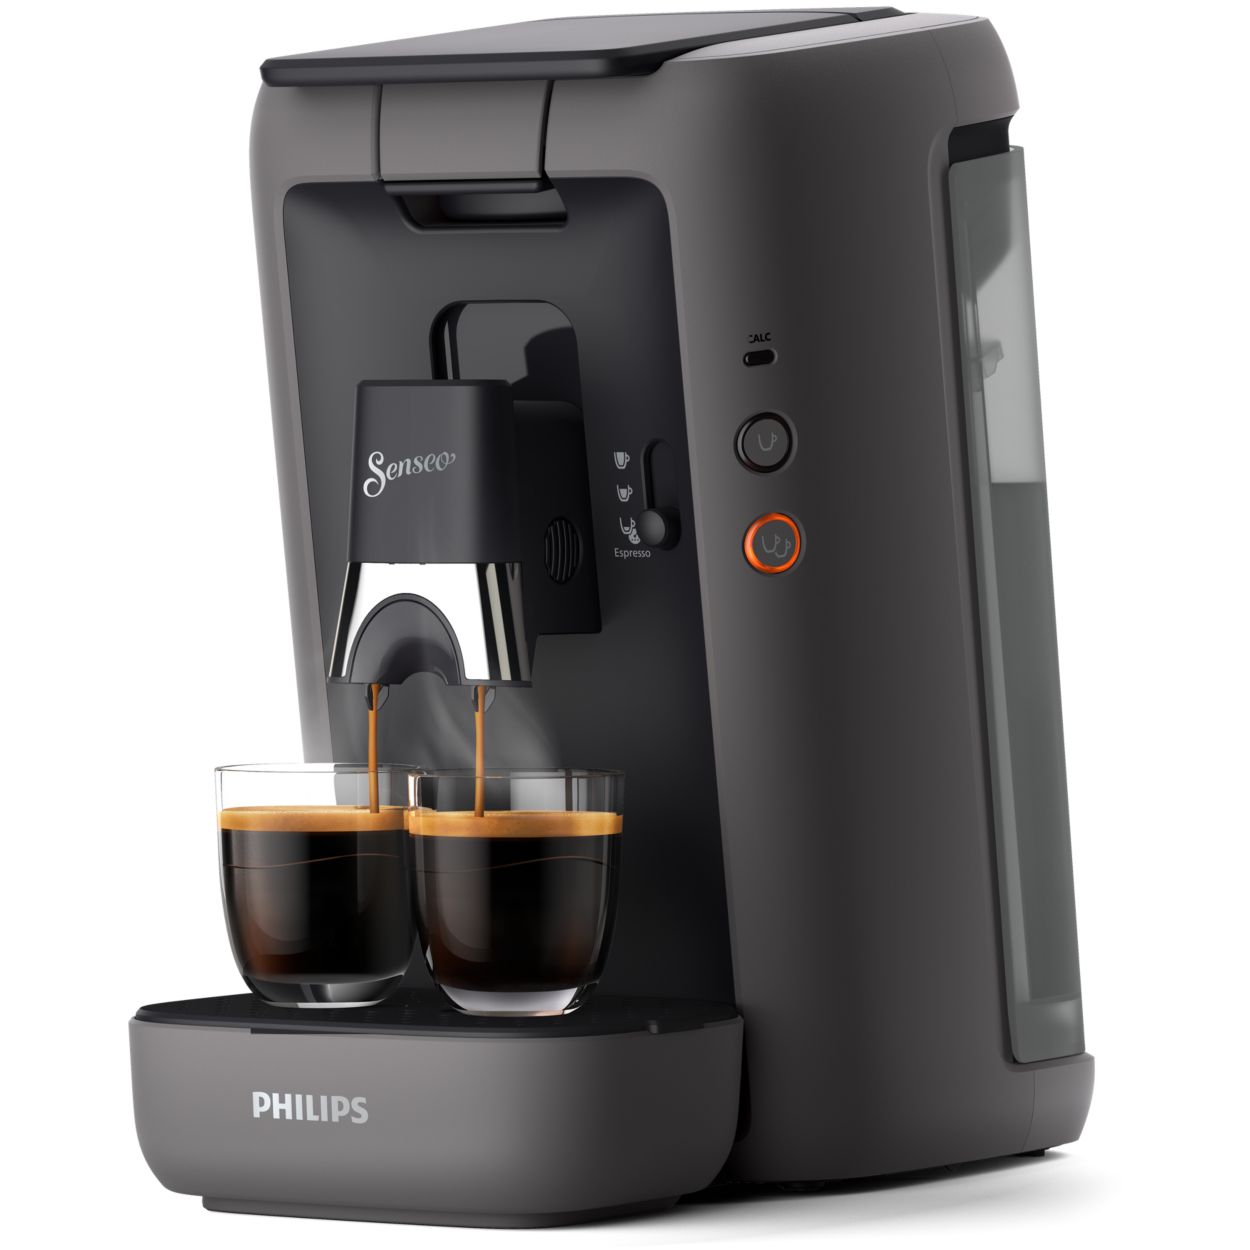 La machine à café Senseo Philips profite de 20€ de remise sur